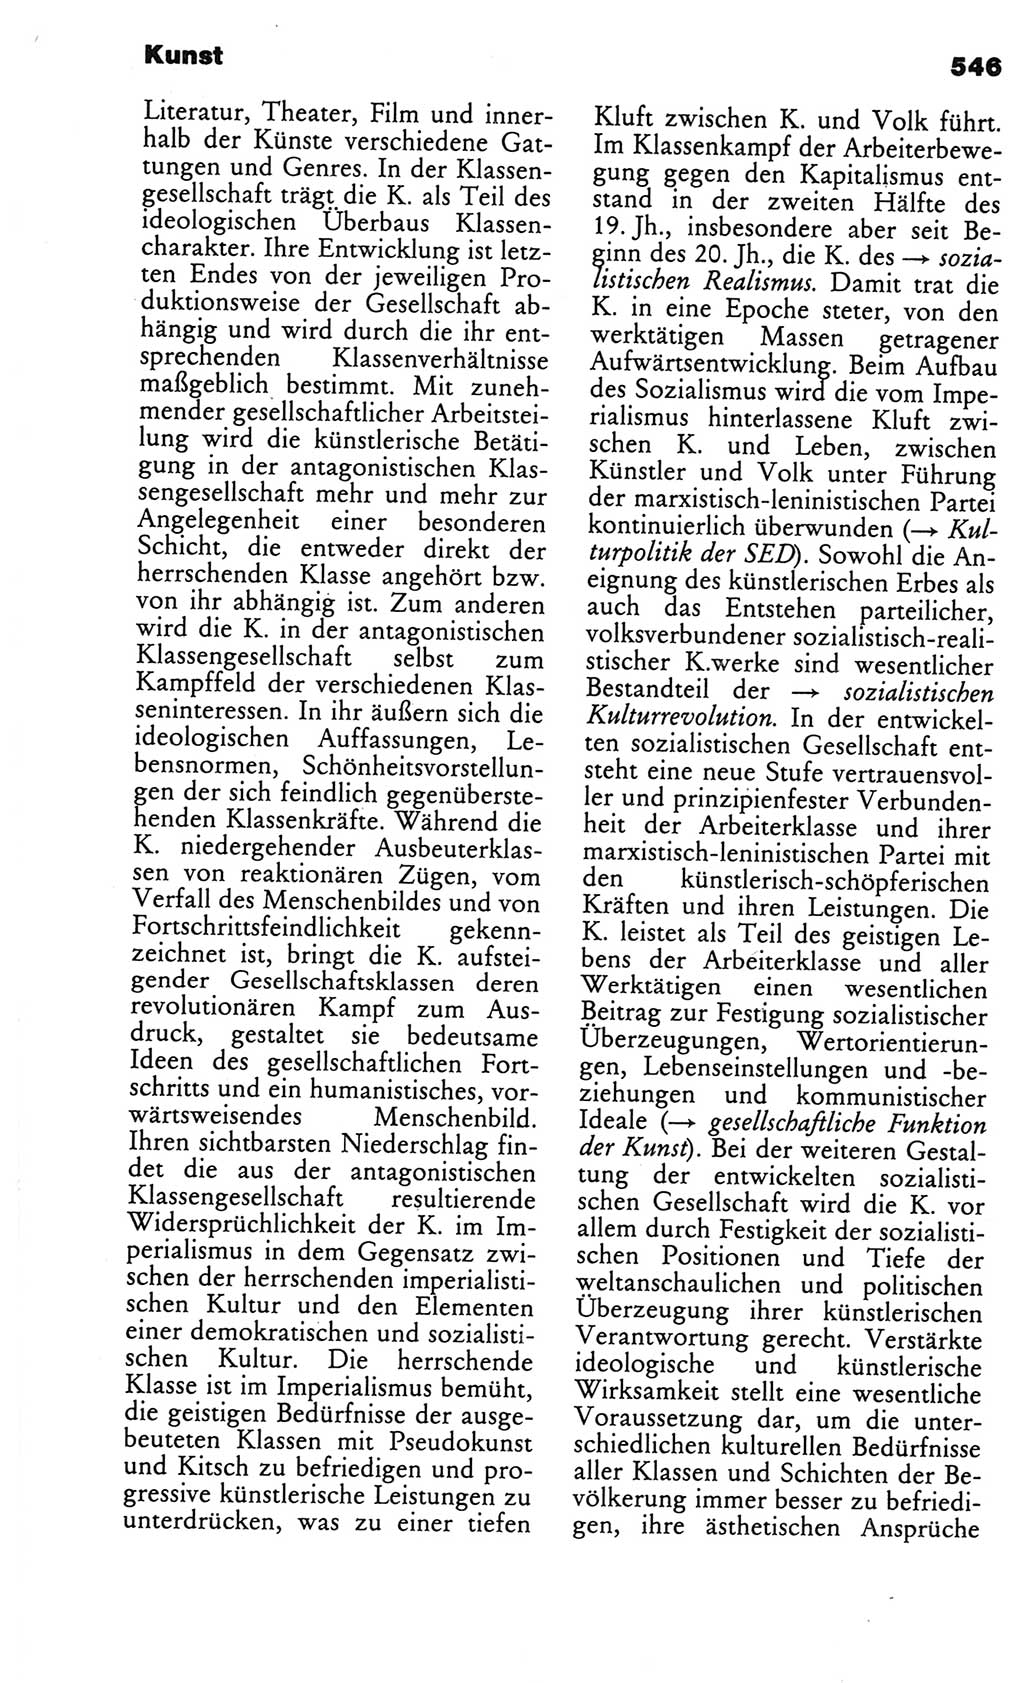 Kleines politisches Wörterbuch [Deutsche Demokratische Republik (DDR)] 1986, Seite 546 (Kl. pol. Wb. DDR 1986, S. 546)